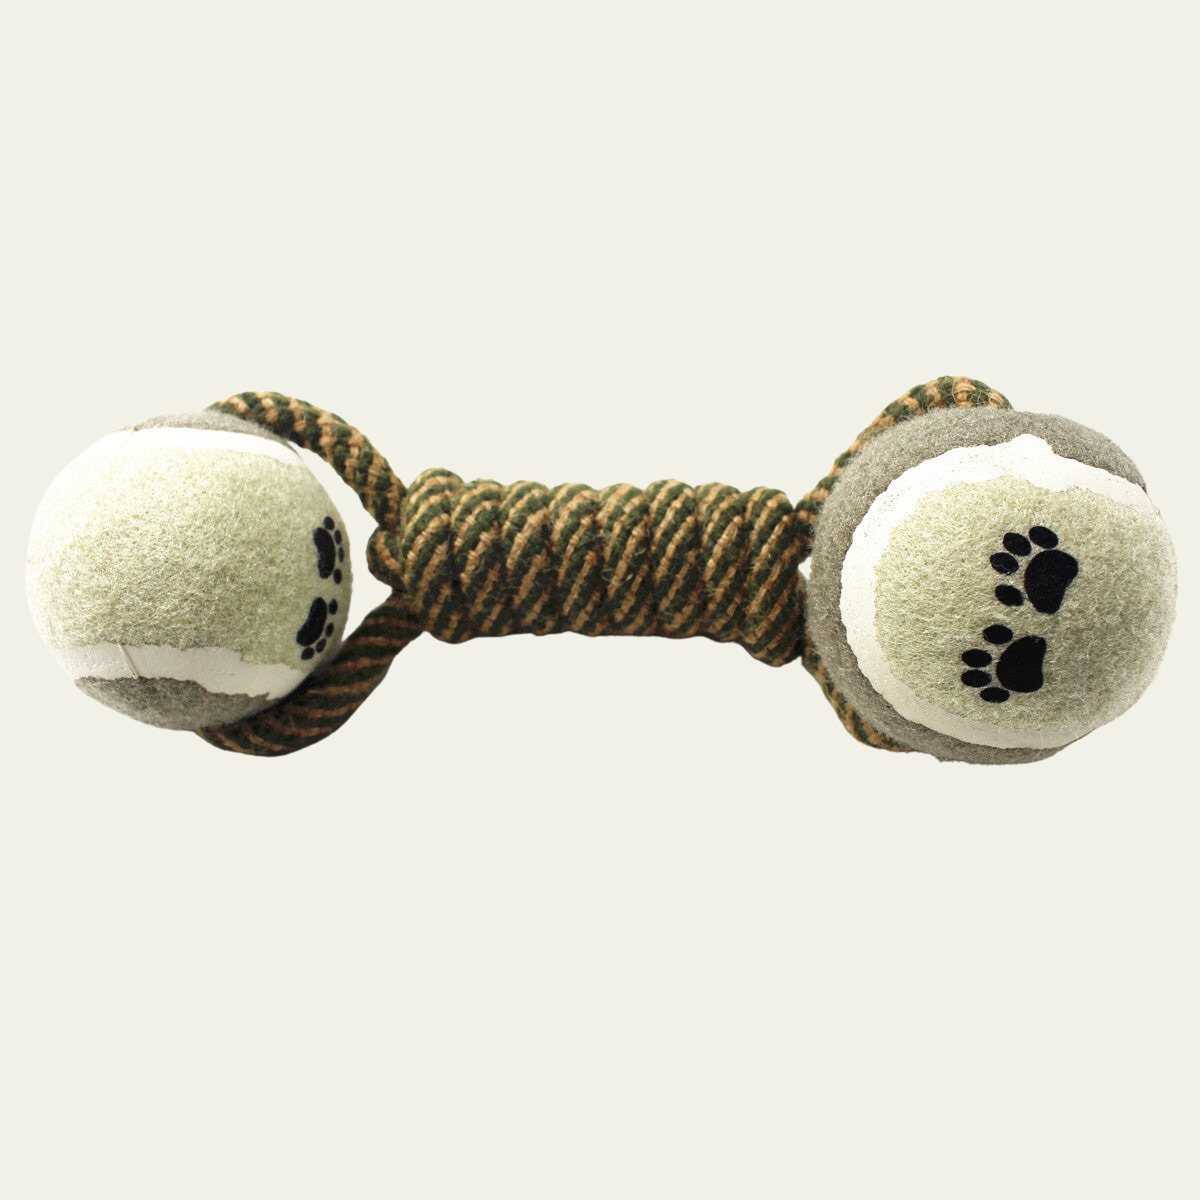 Premium Cotton Animal Instinct Rope Toy